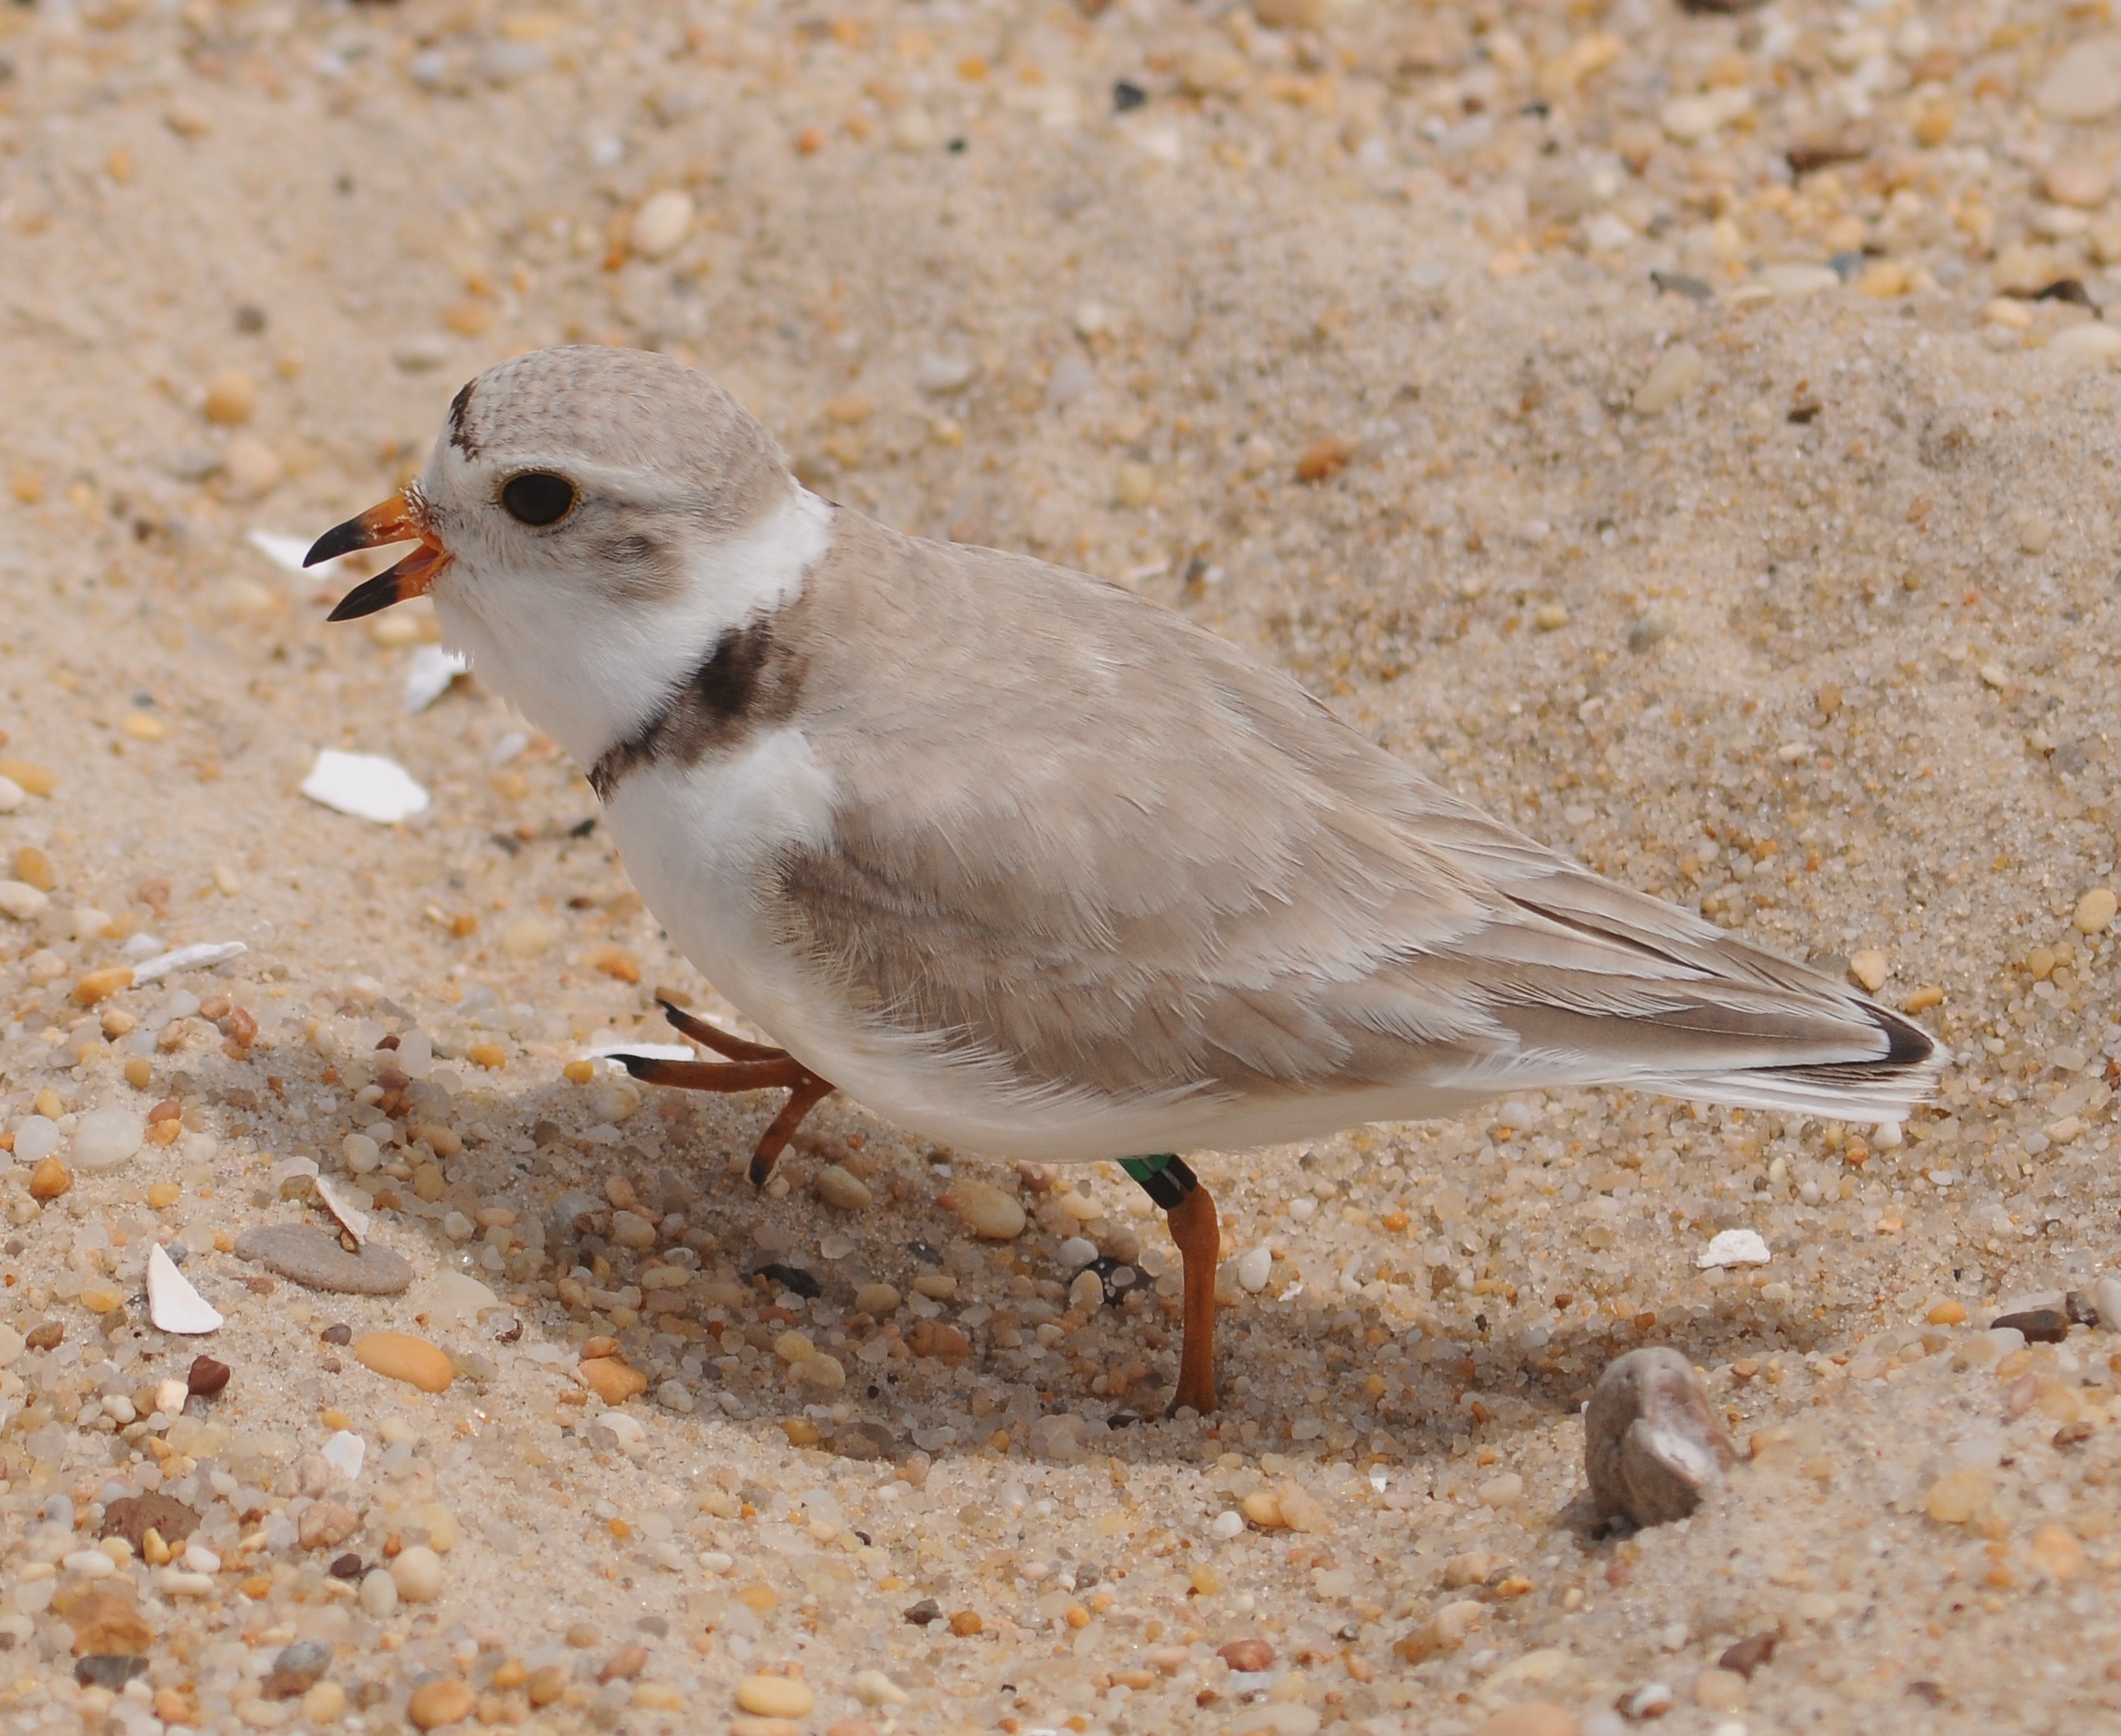 a small bird standing on a beach